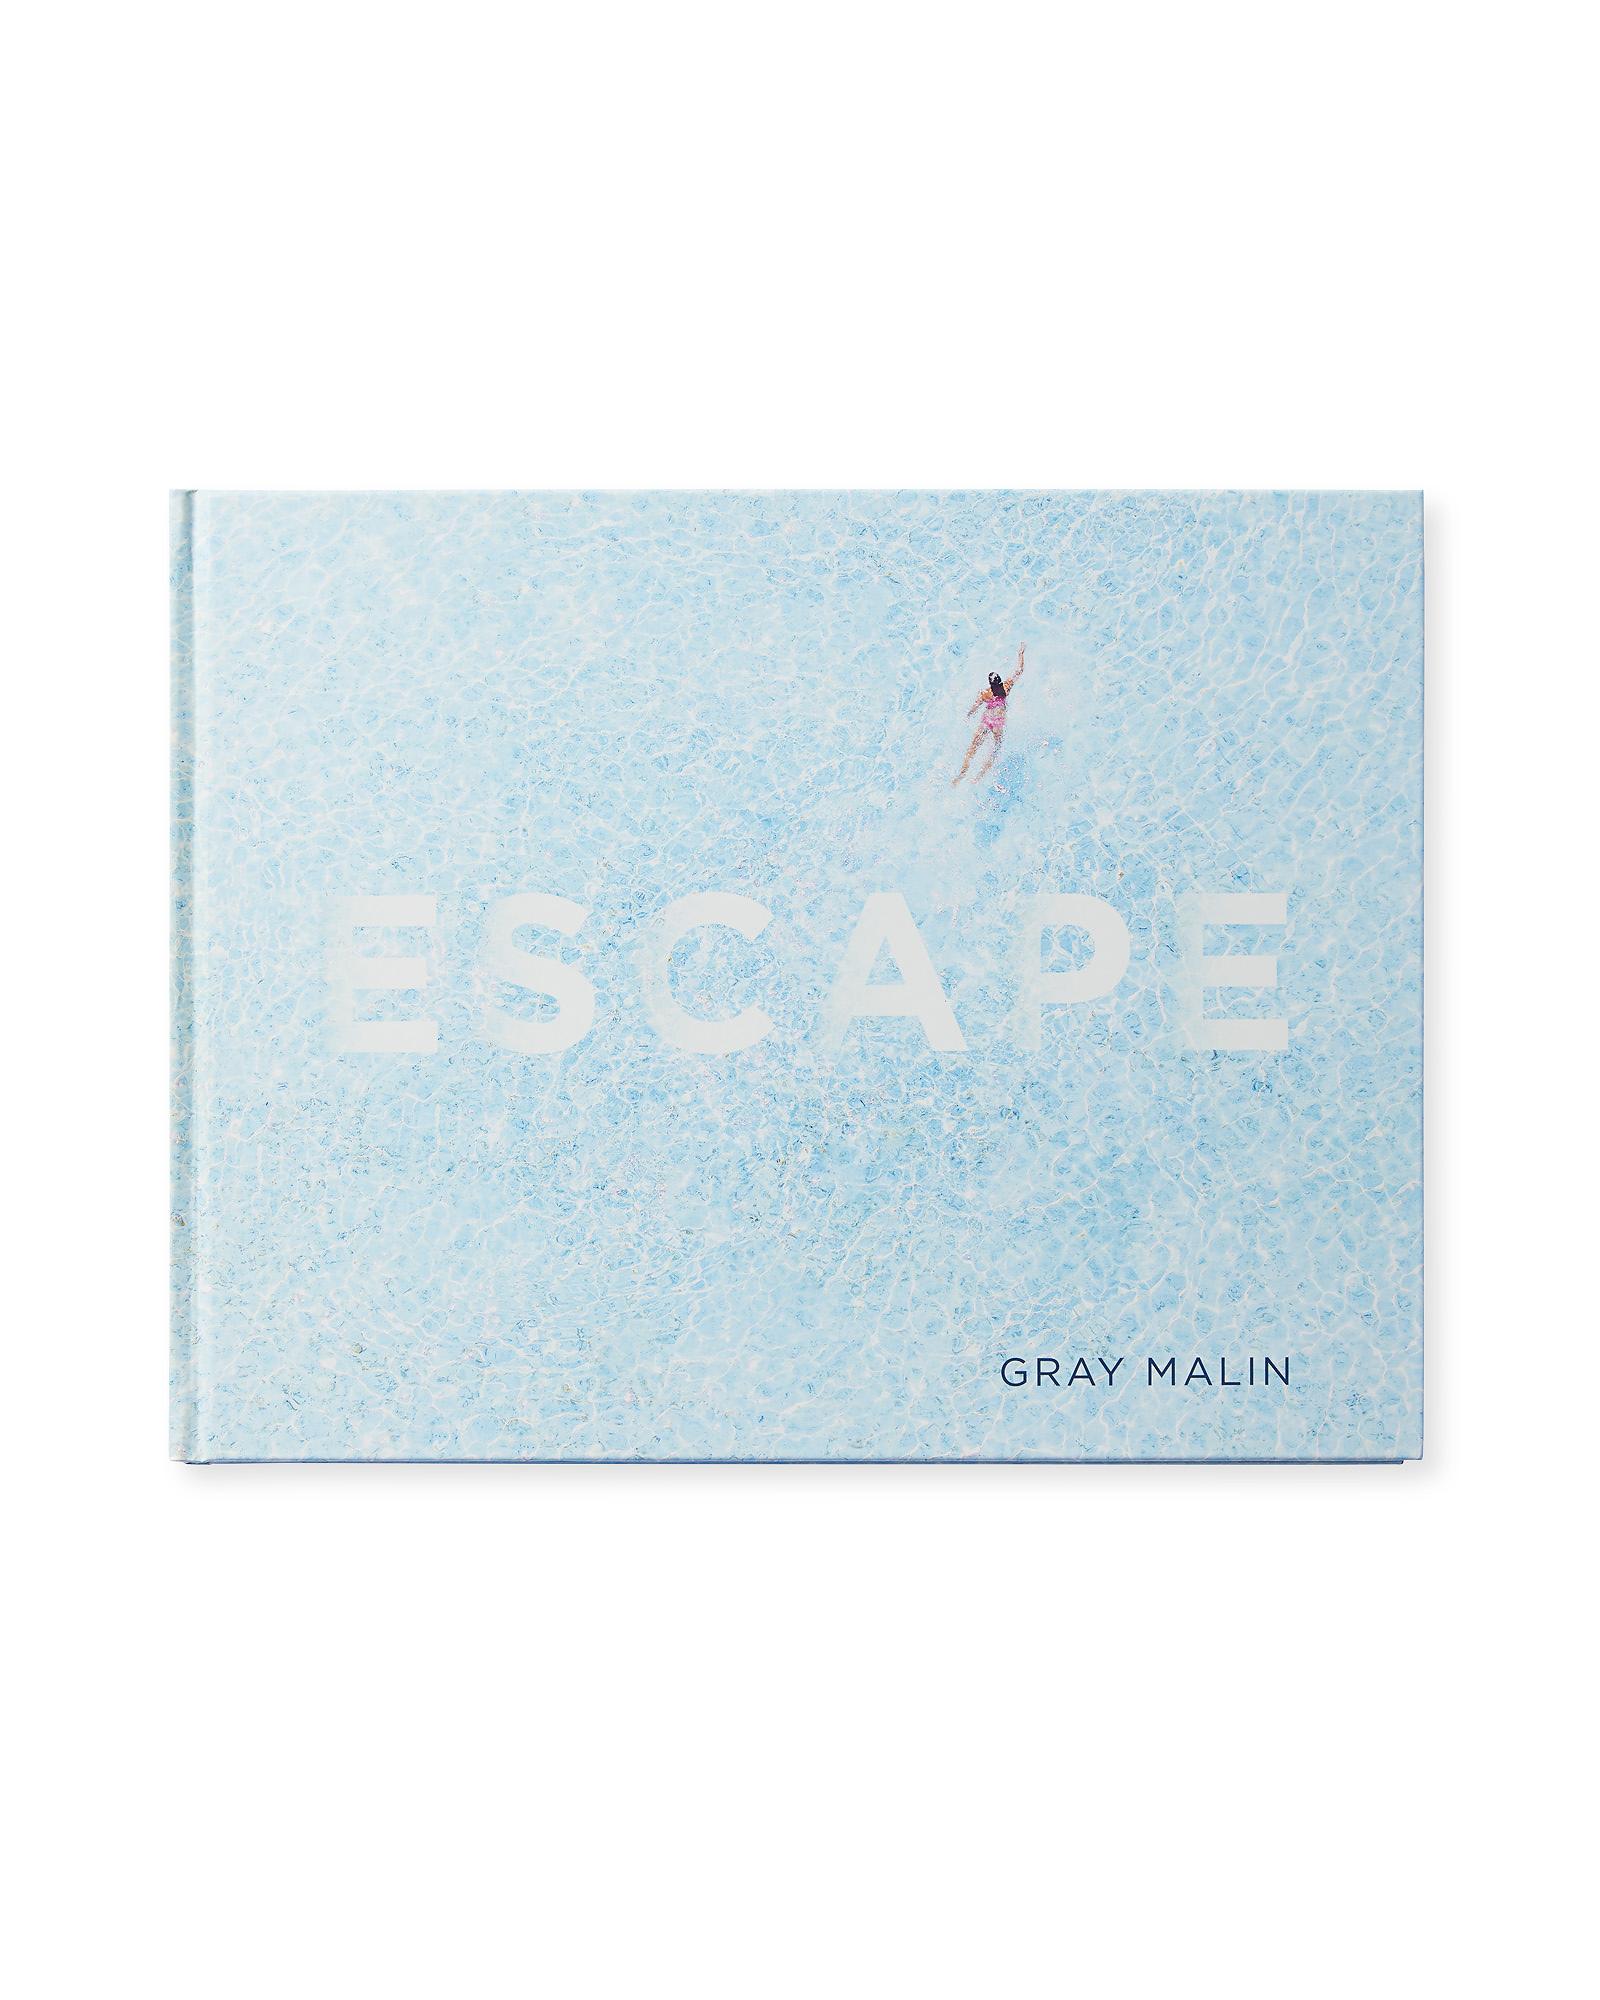 "Escape" by Gray Malin